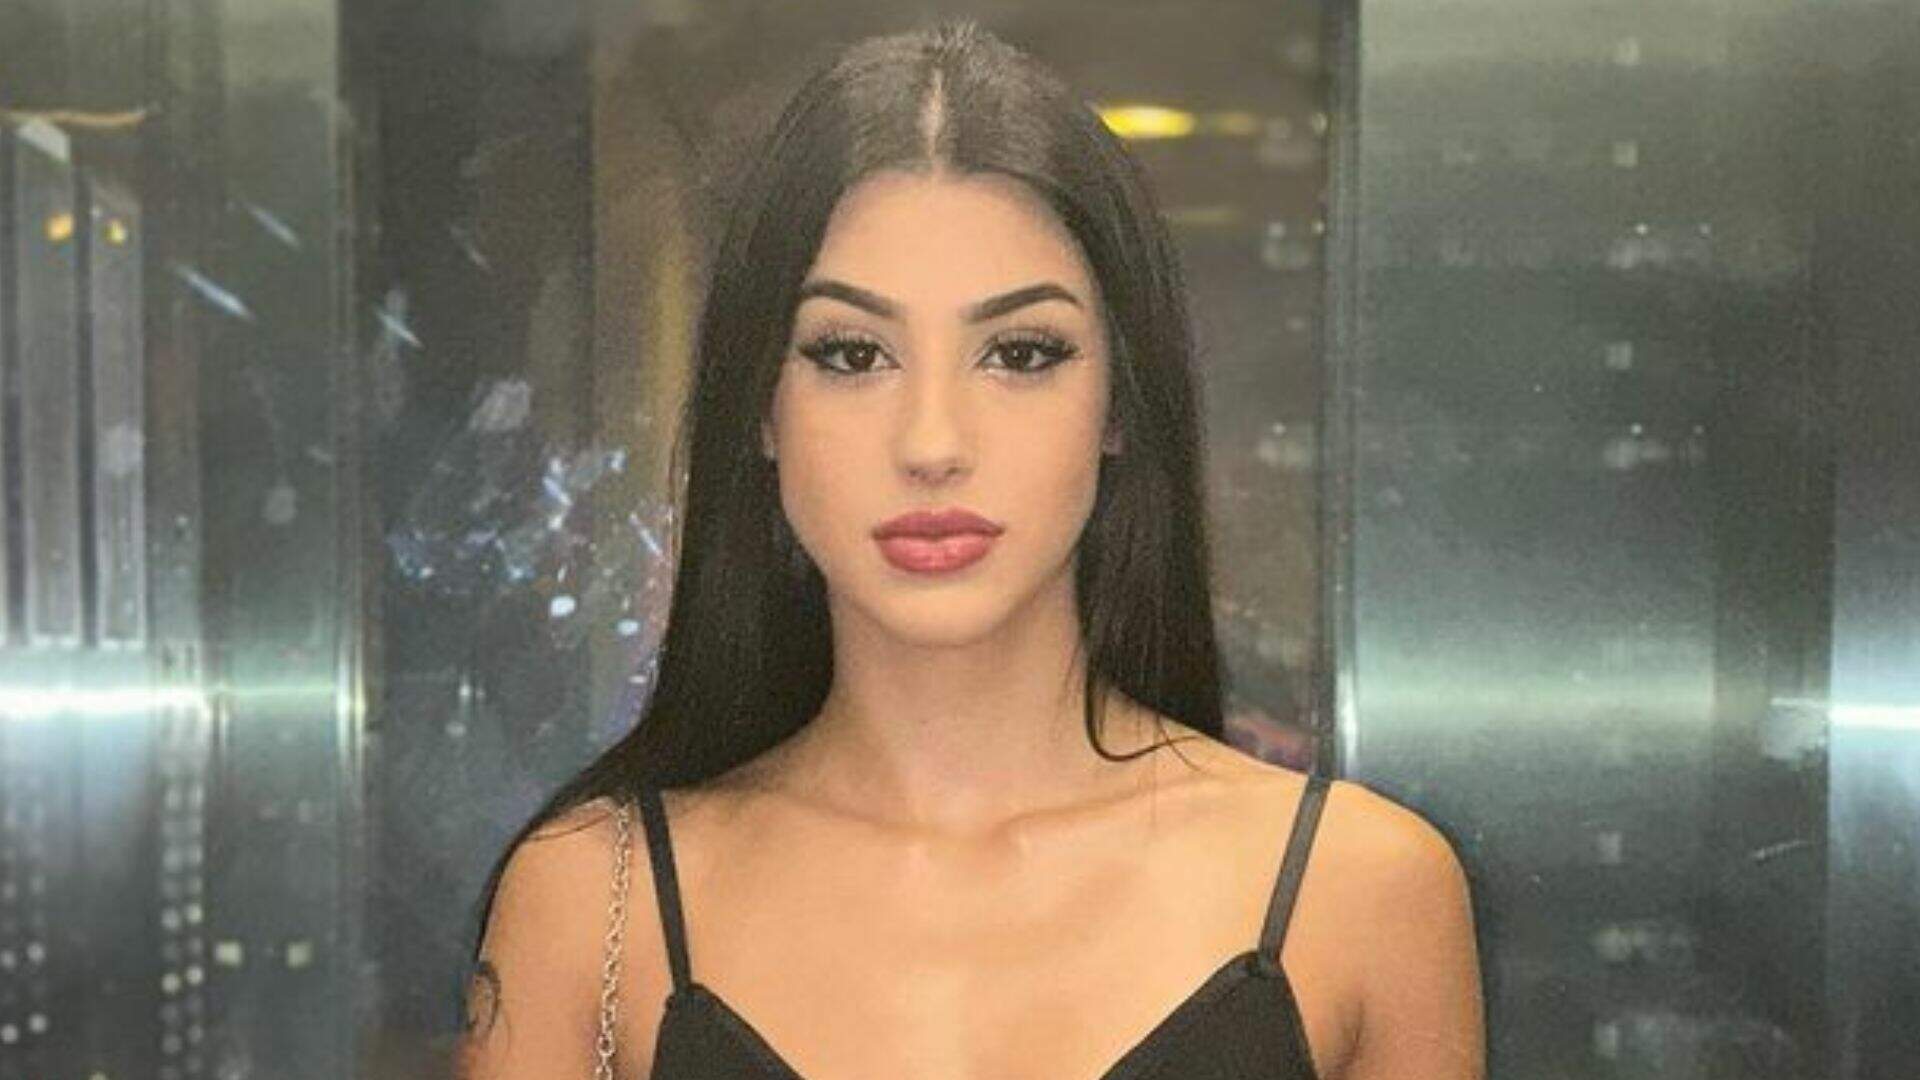 Com decote profundo, Bia Miranda usa vestido transparente e tira foto sensualizando no elevador - Metropolitana FM